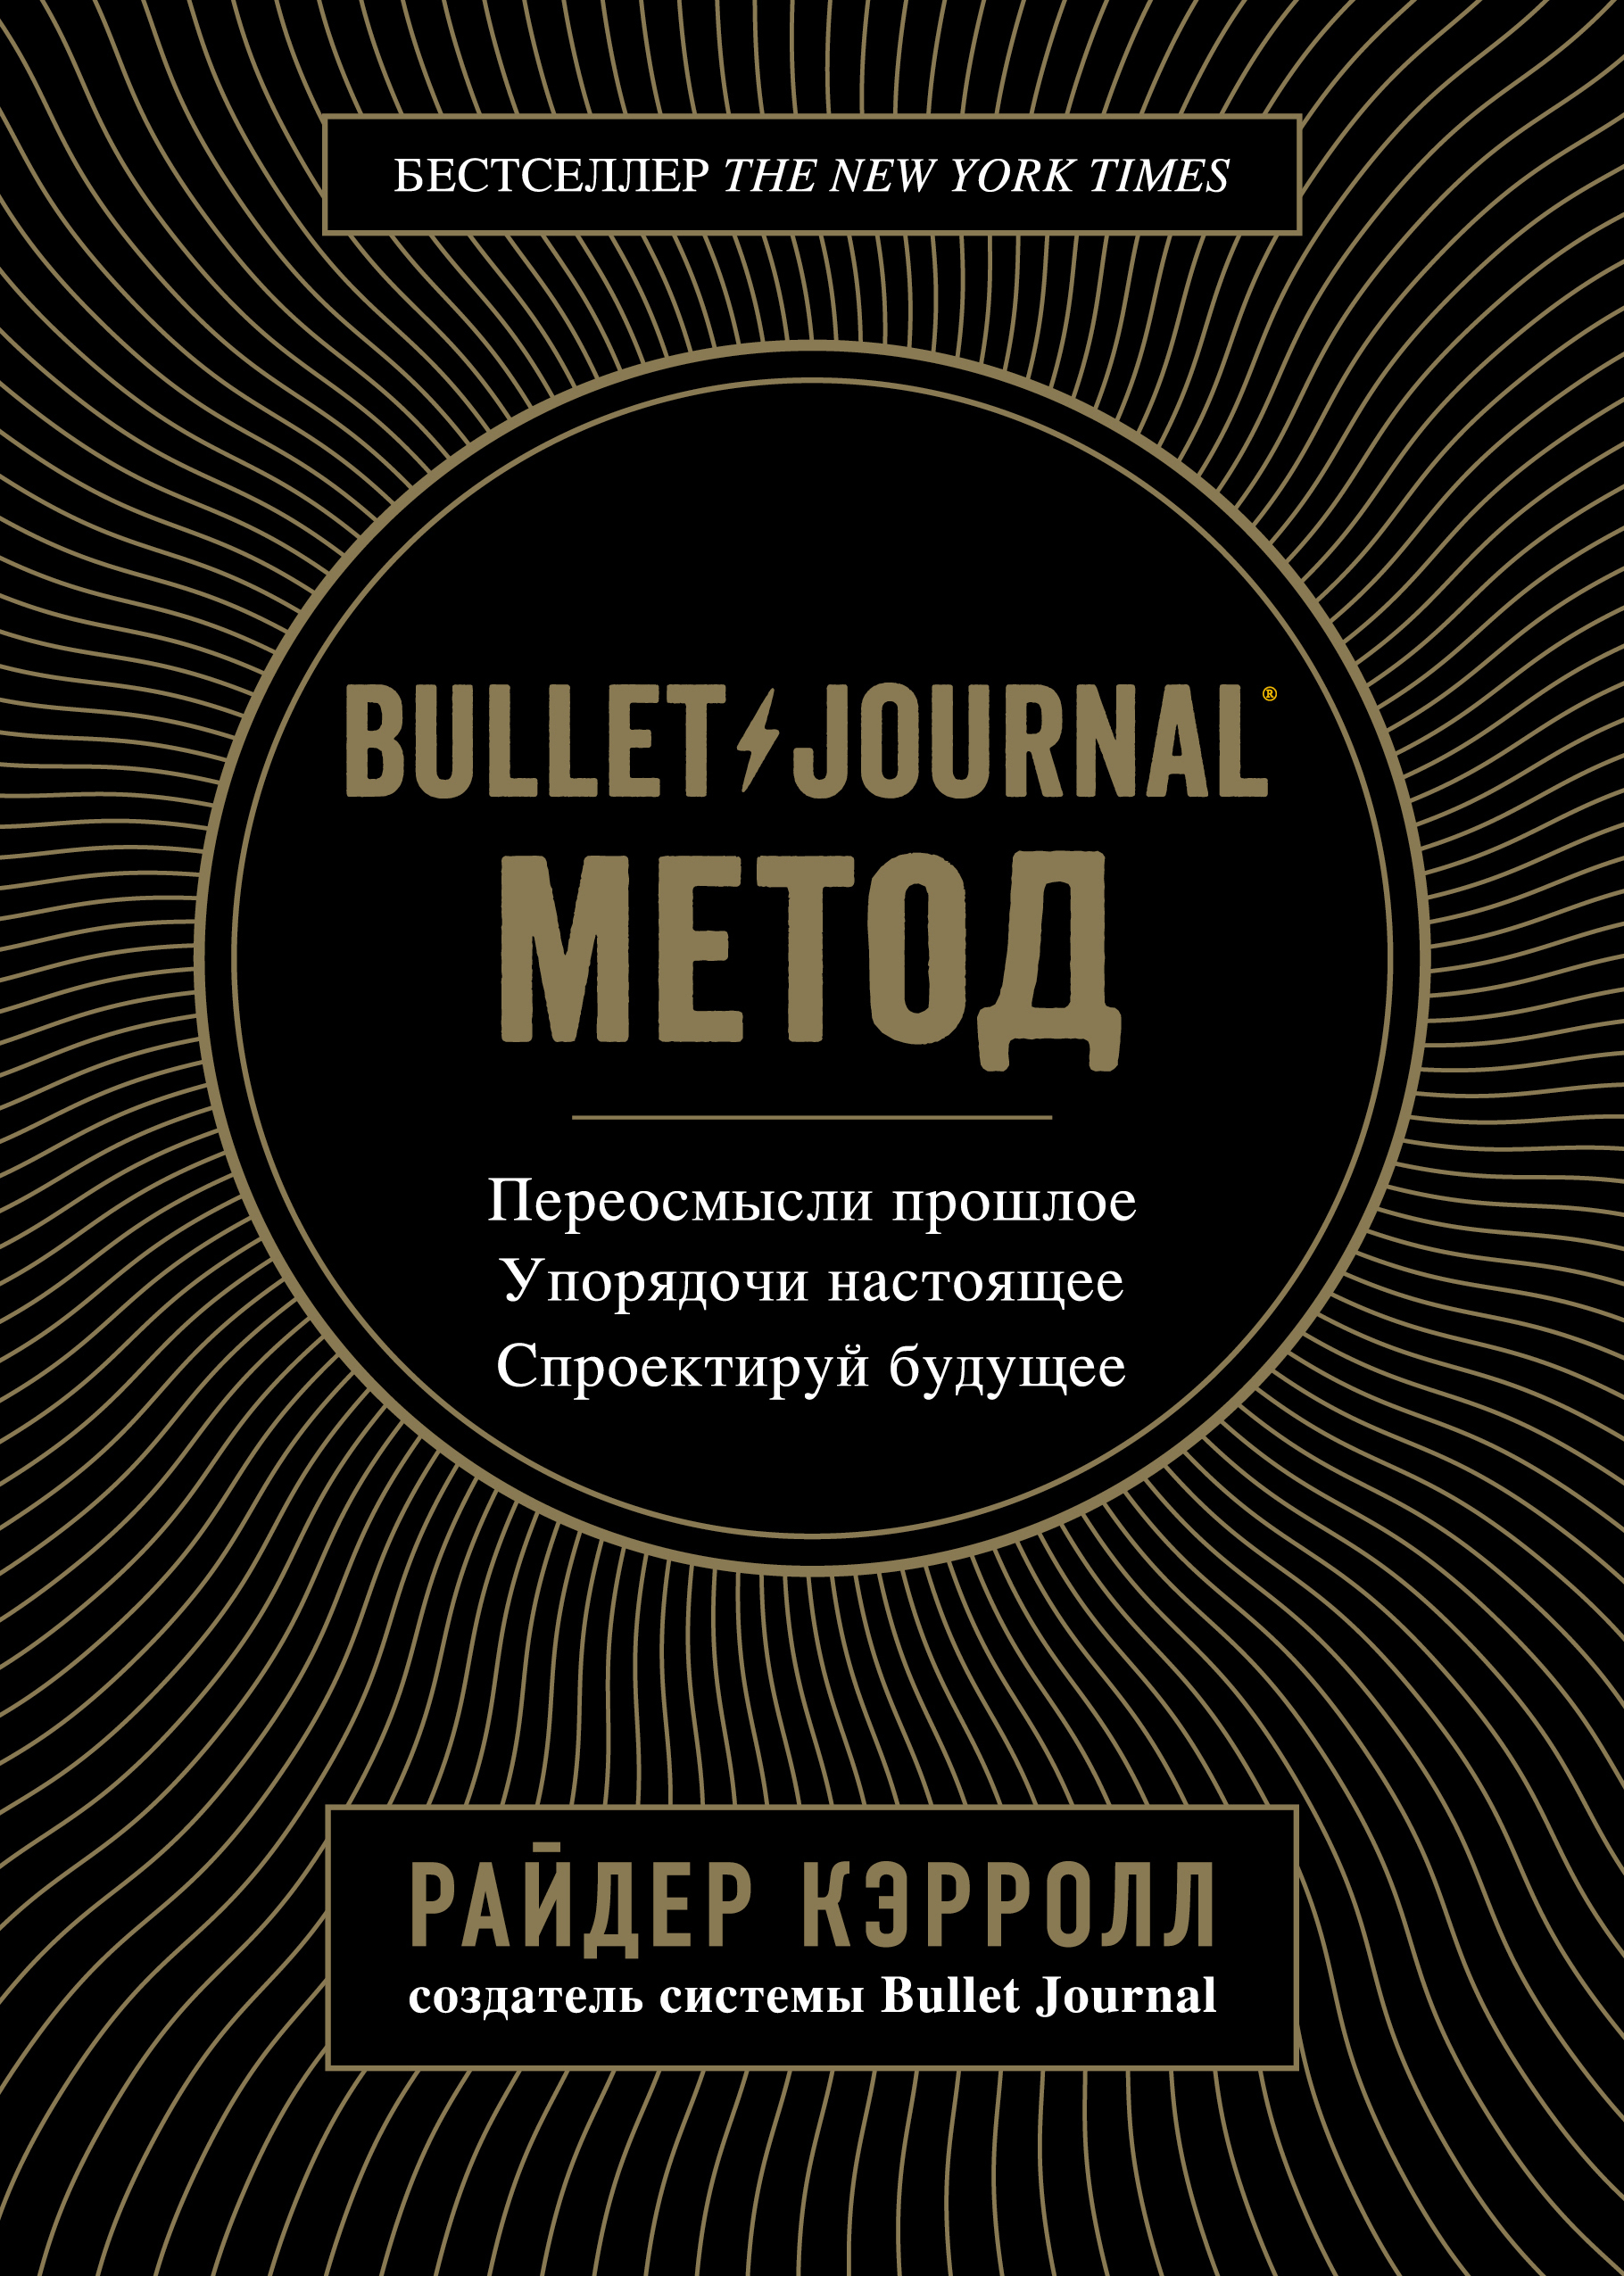 Книга Bullet Journal метод из серии , созданная Райдер Кэрролл, может относится к жанру Самосовершенствование, Самосовершенствование, Зарубежная деловая литература. Стоимость электронной книги Bullet Journal метод с идентификатором 43431954 составляет 249.00 руб.